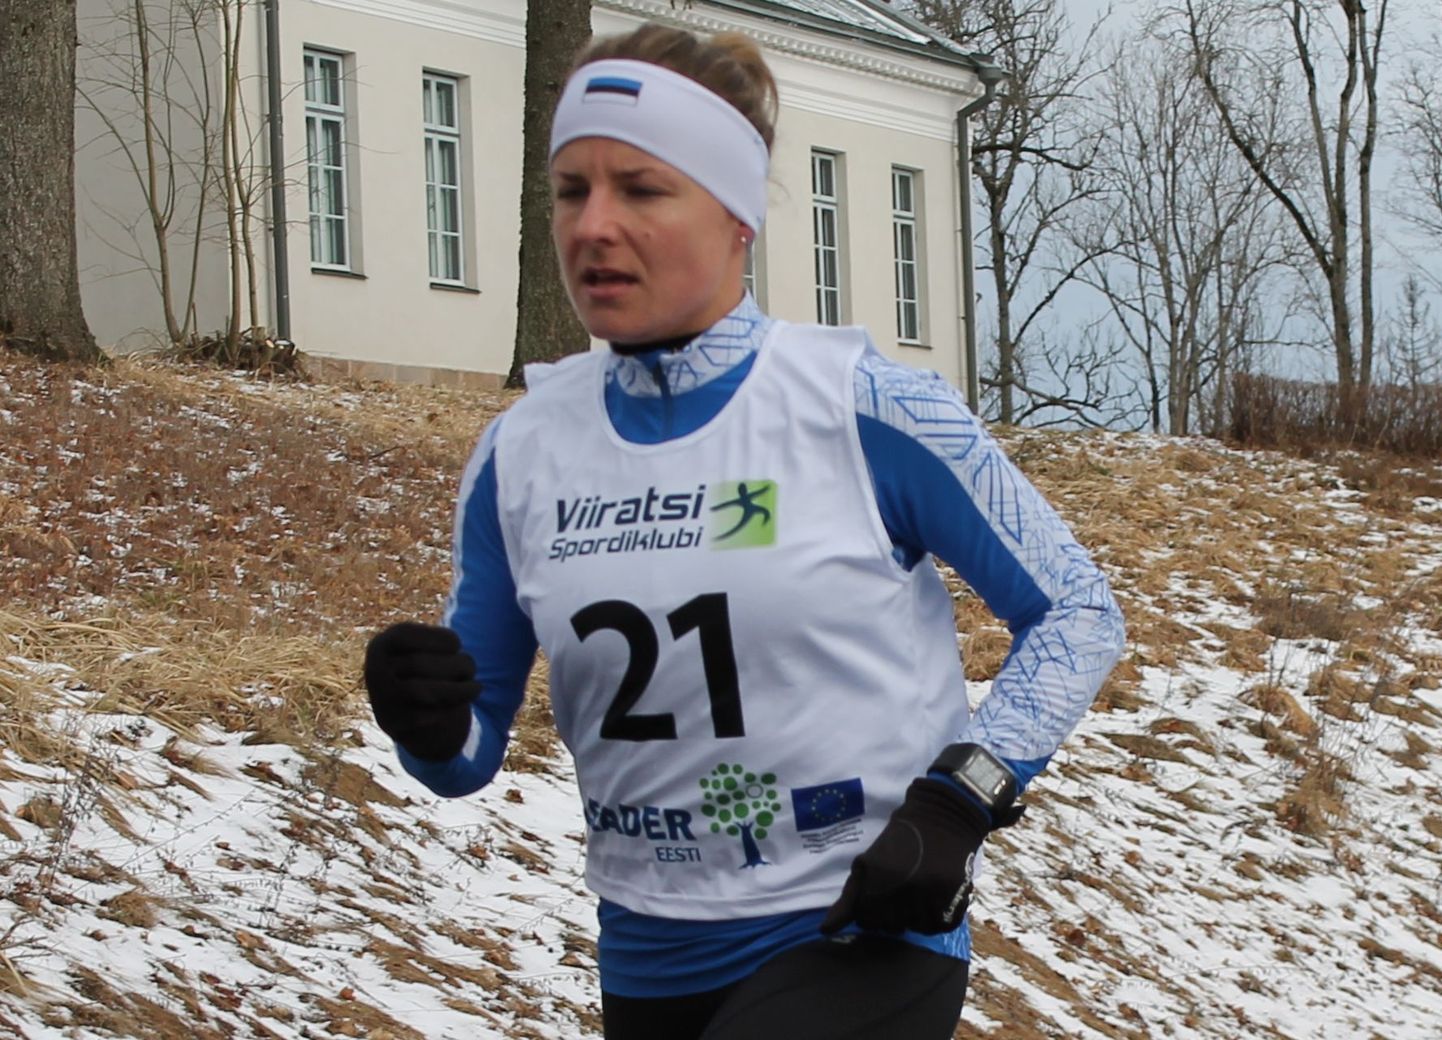 Sille Puhu võitis teist aastat järjest klubi Tartu maraton kuubiku sarja. Pilt on tehtud tänavuselt Staieri talvejooksul.